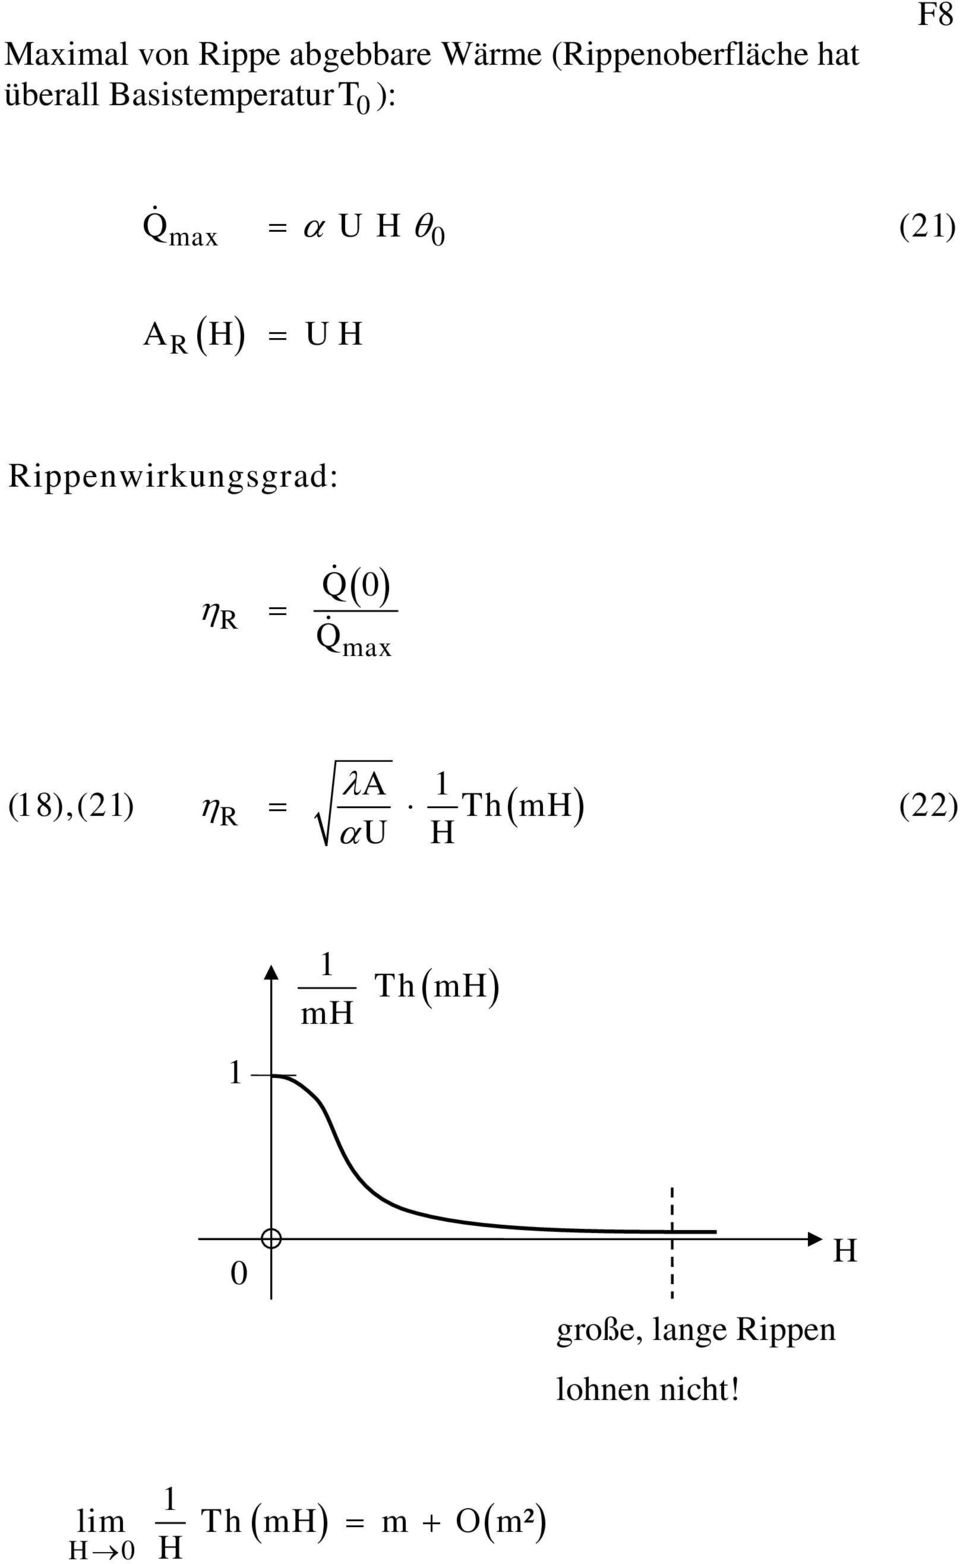 ippnwirkungsgrad: η Q0 Q ma λa 1 (18),(21) η Th( mh ) (22)